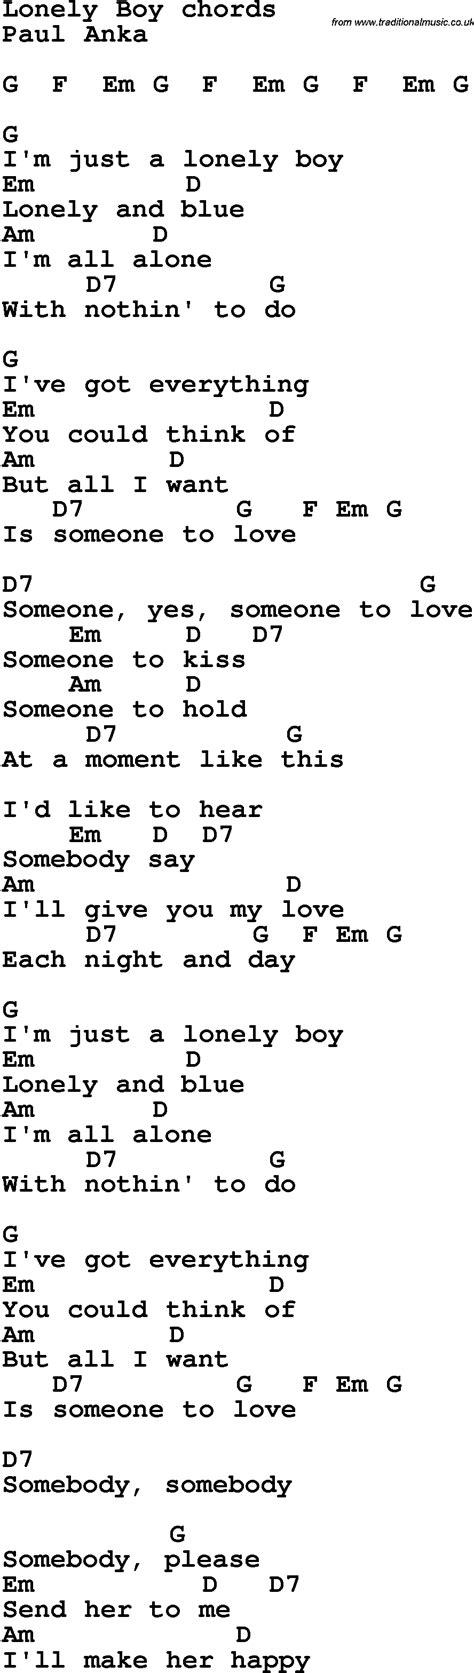 lyrics to lonely boy